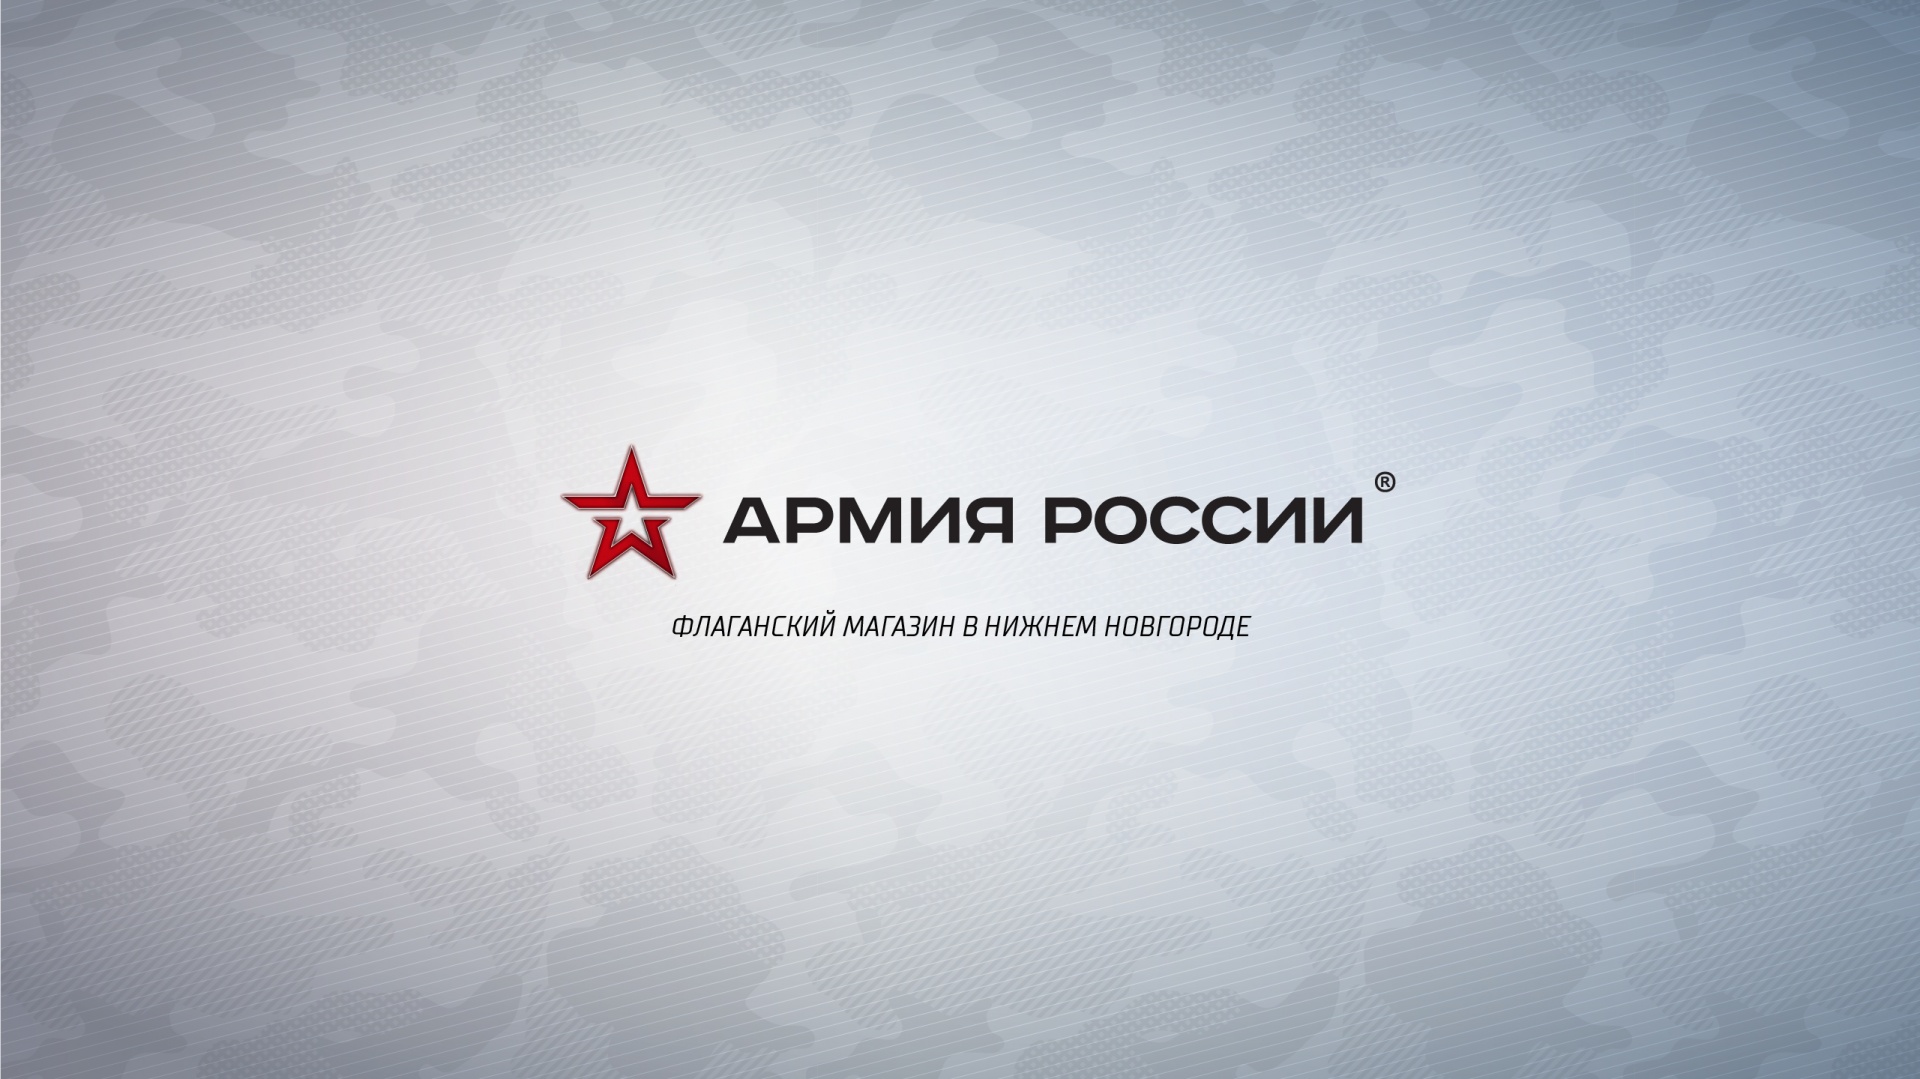 Официальное открытие магазина "Армия России" в Нижнем новгороде